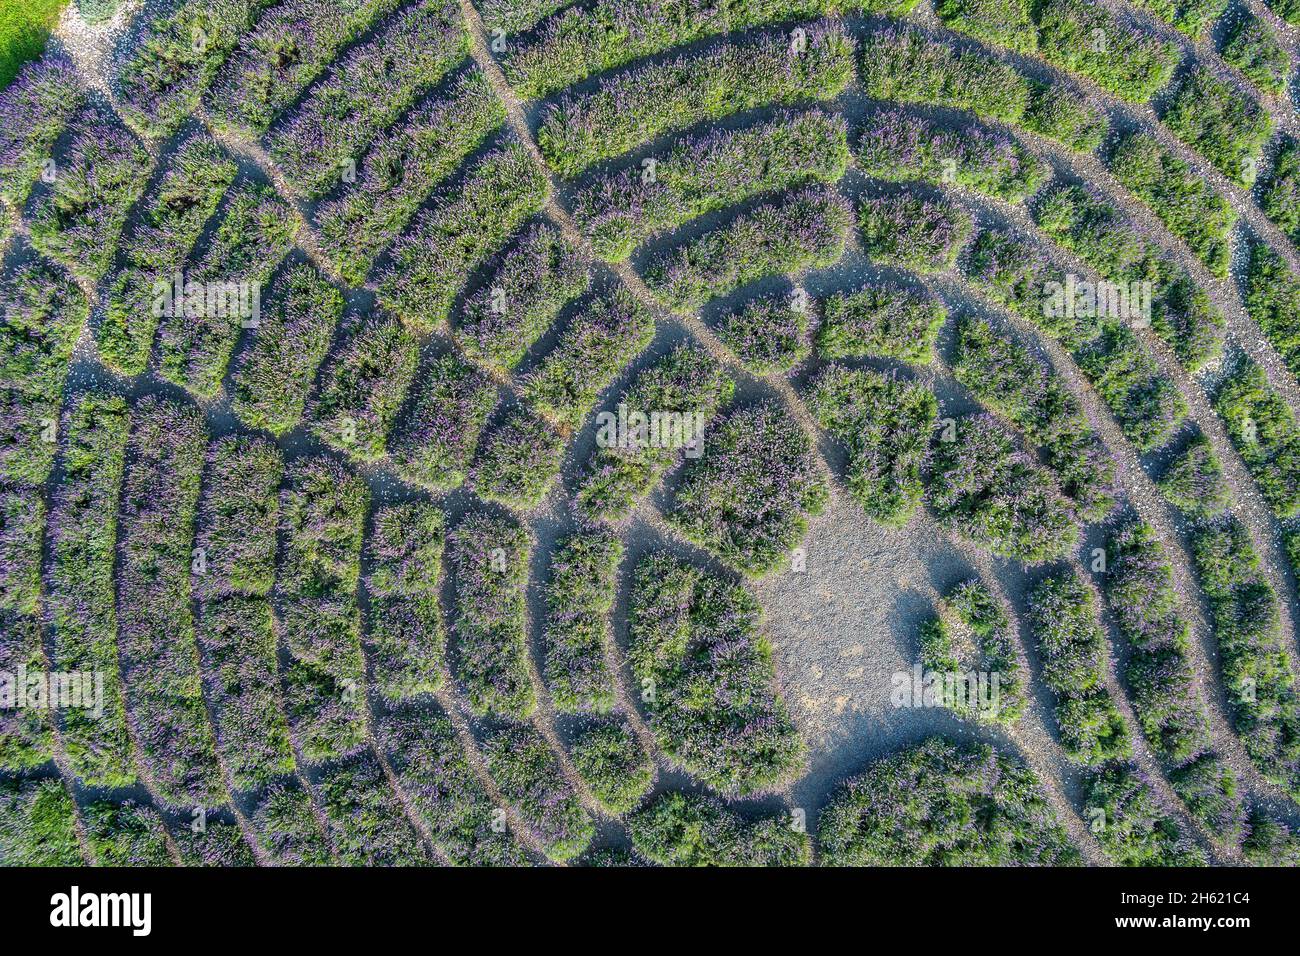 veduta aerea del labirinto di lavanda nel giardino botanico dell'università di hohenheim. Foto Stock